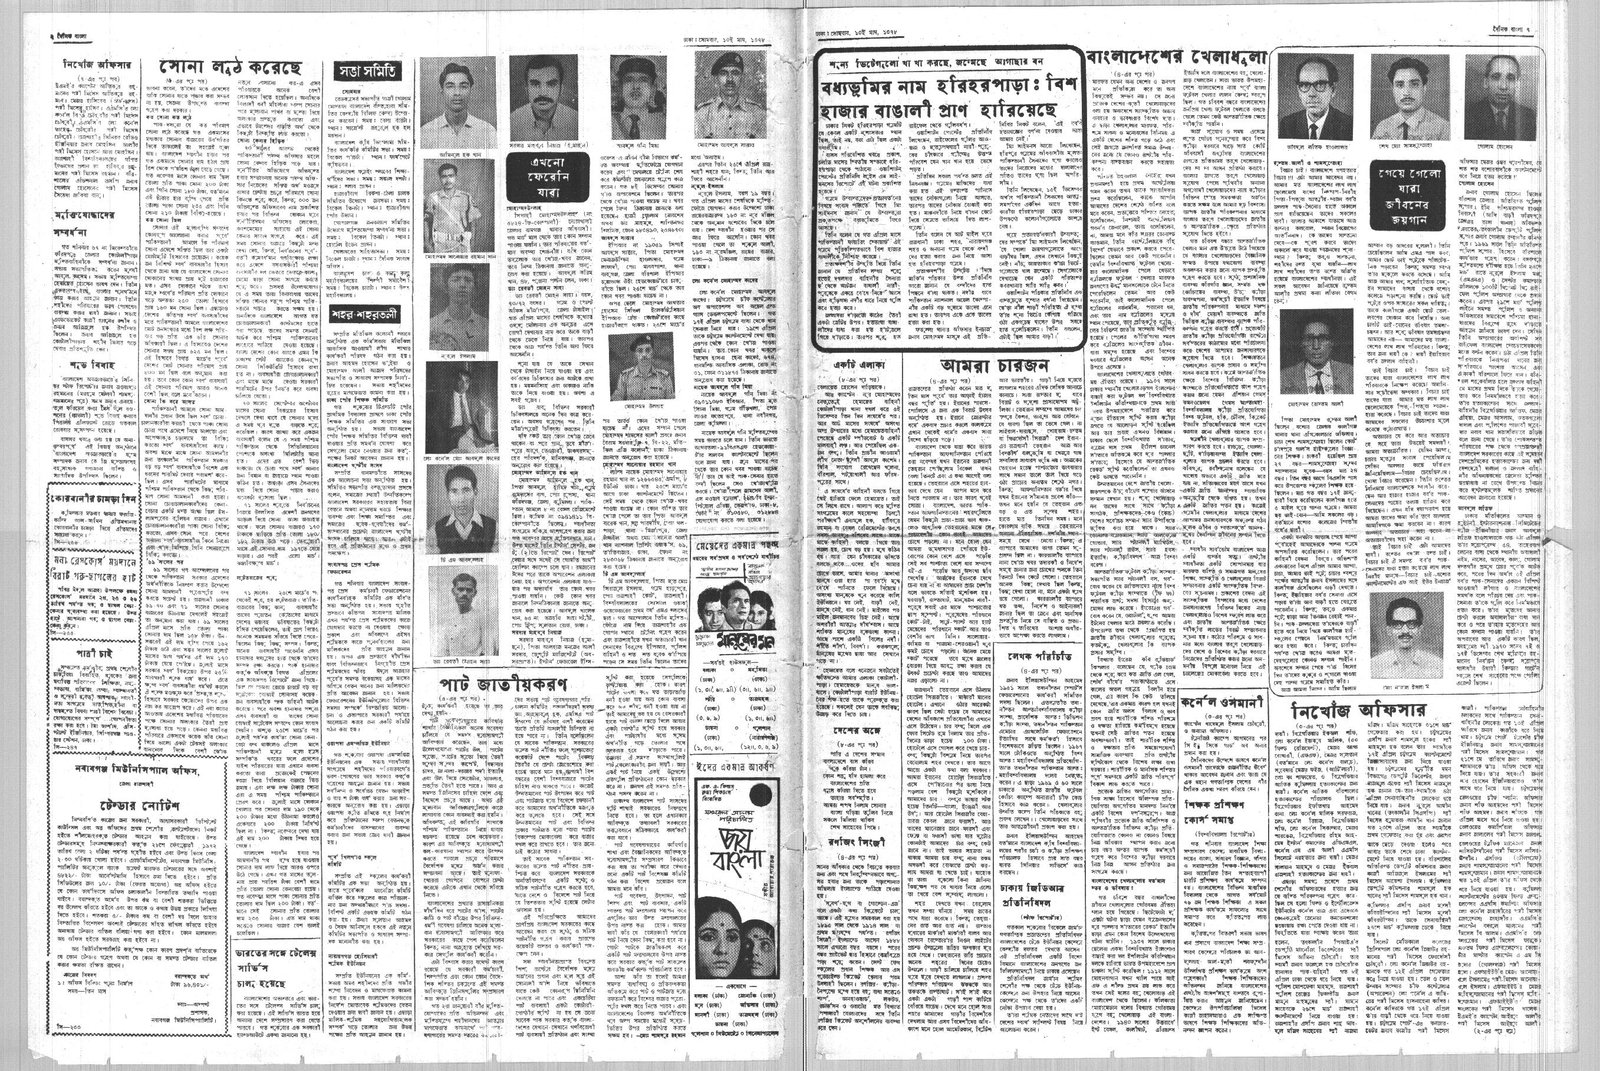 24JAN1972-DAINIK BANGLA-Regular-Page 2 and 7